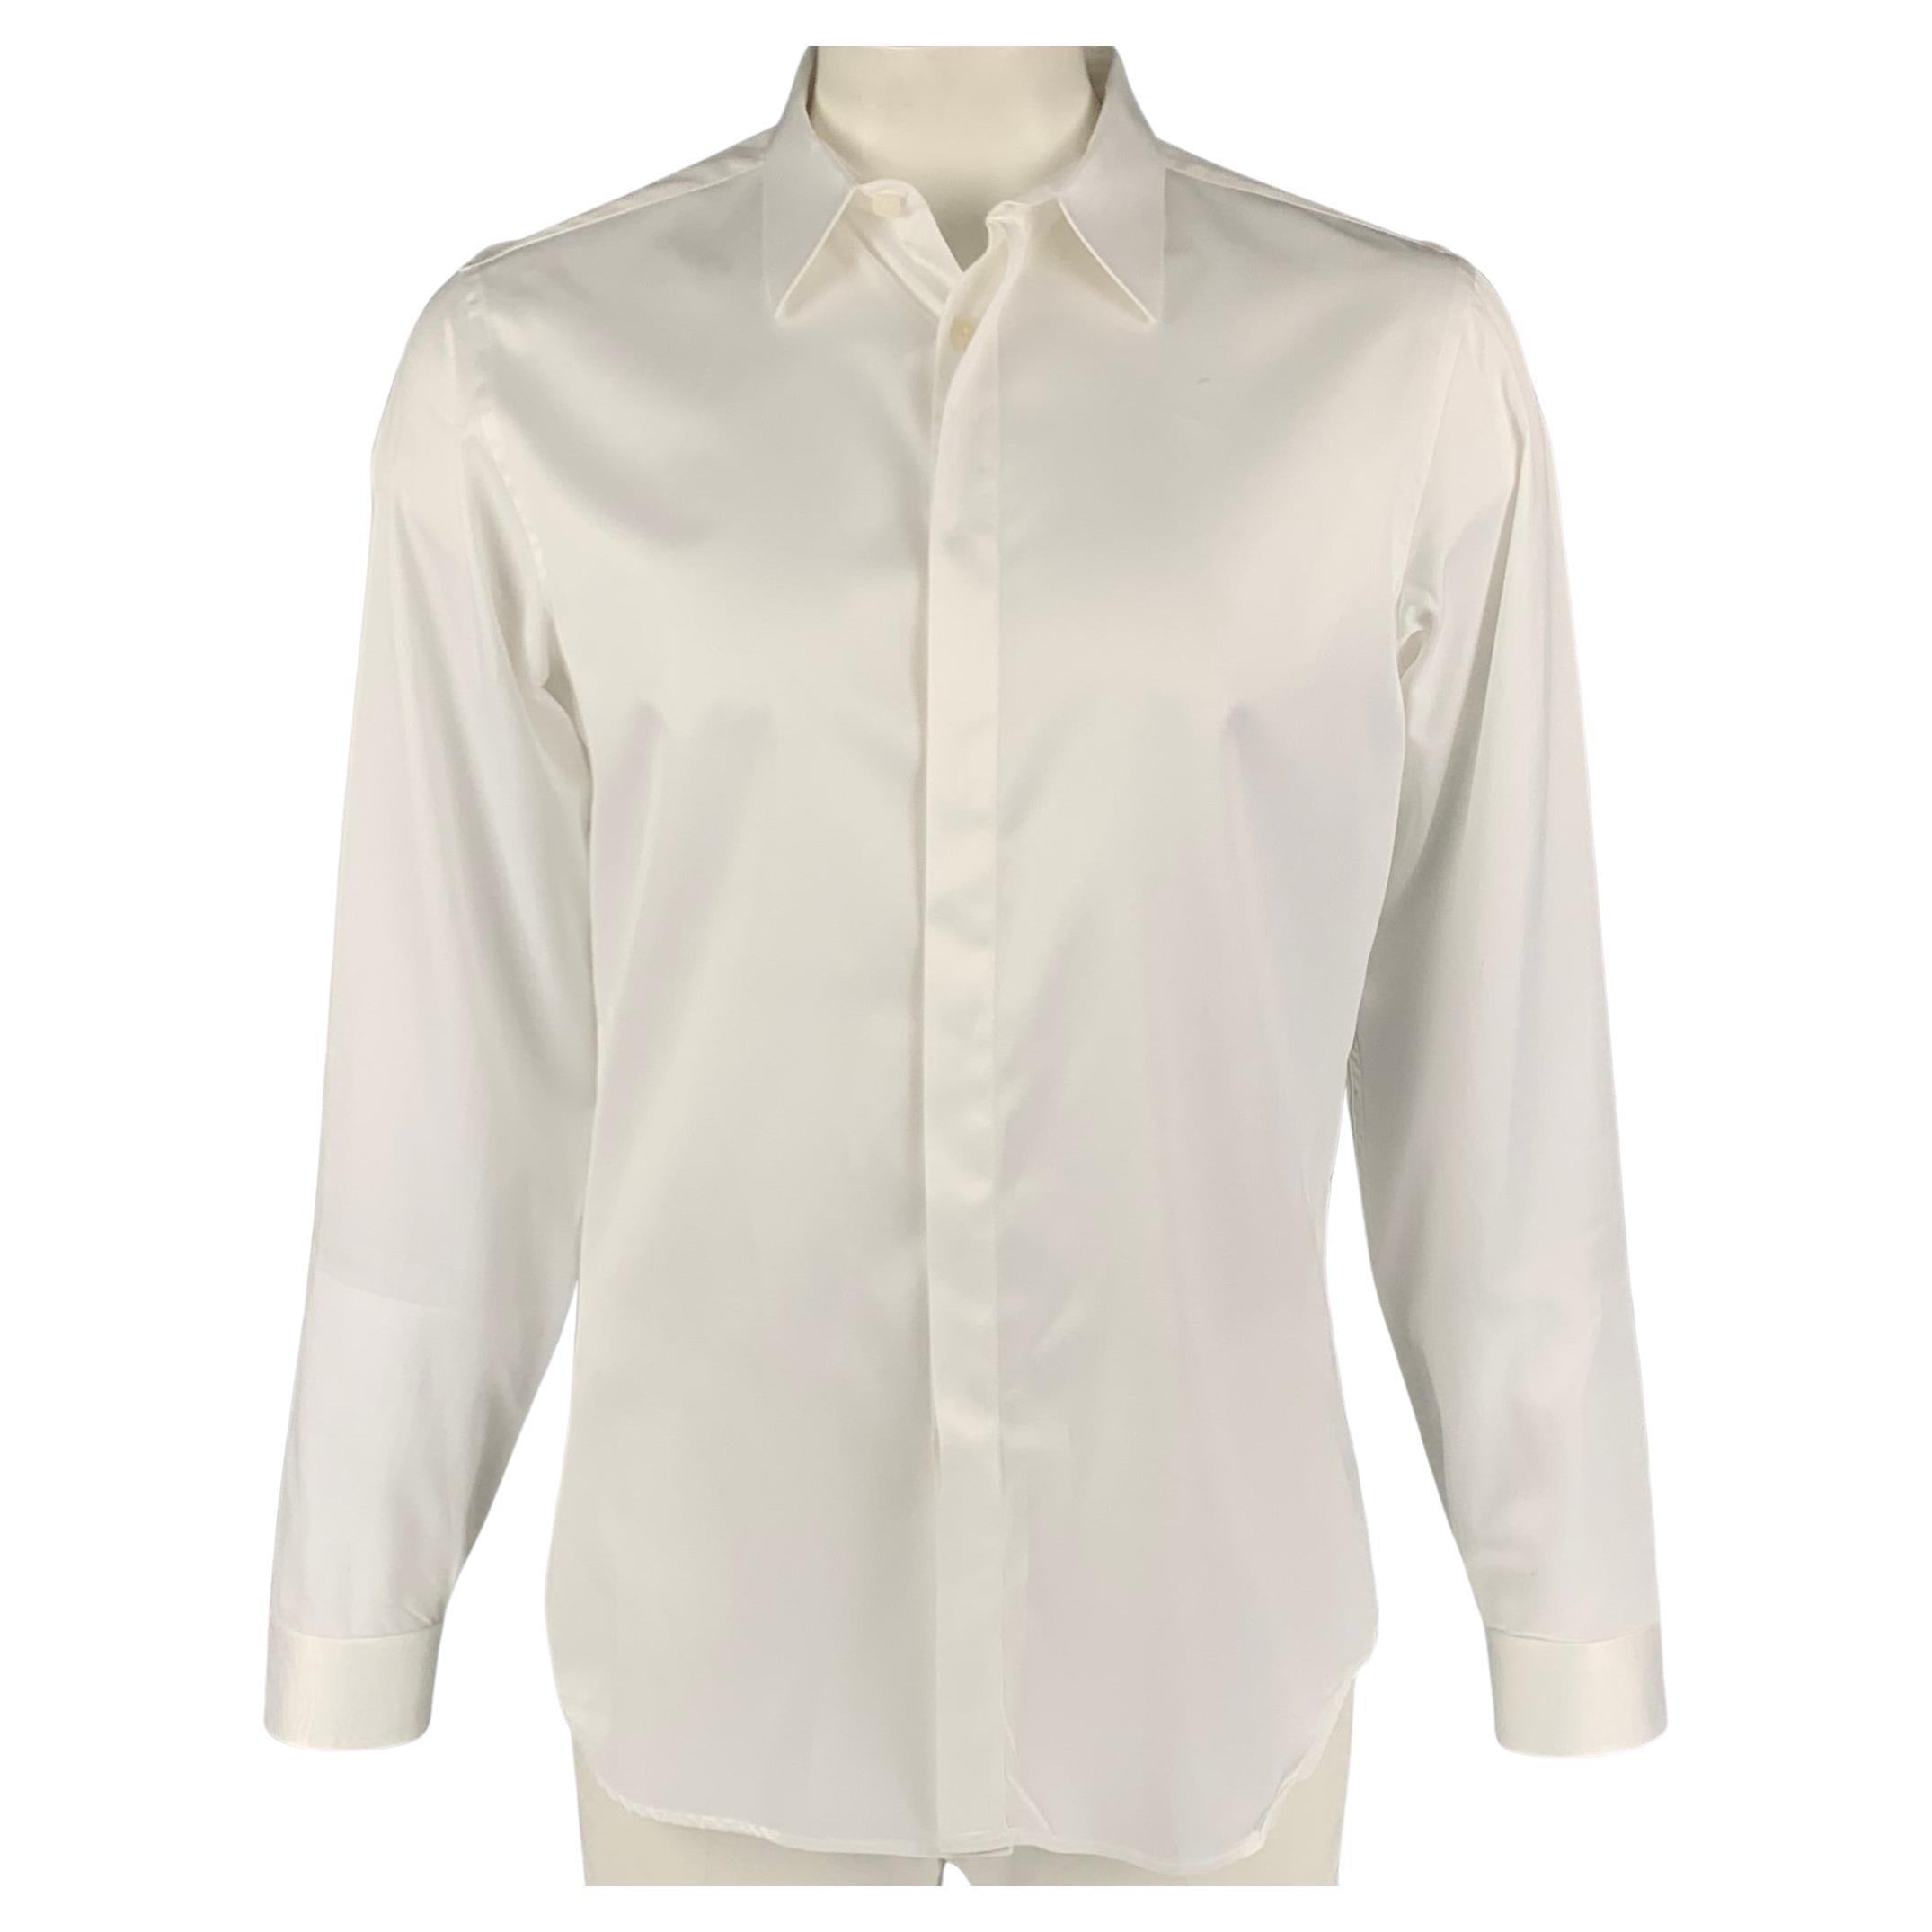 CALVIN KLEIN COLLECTION Size XL White Cotton Long Sleeve Shirt